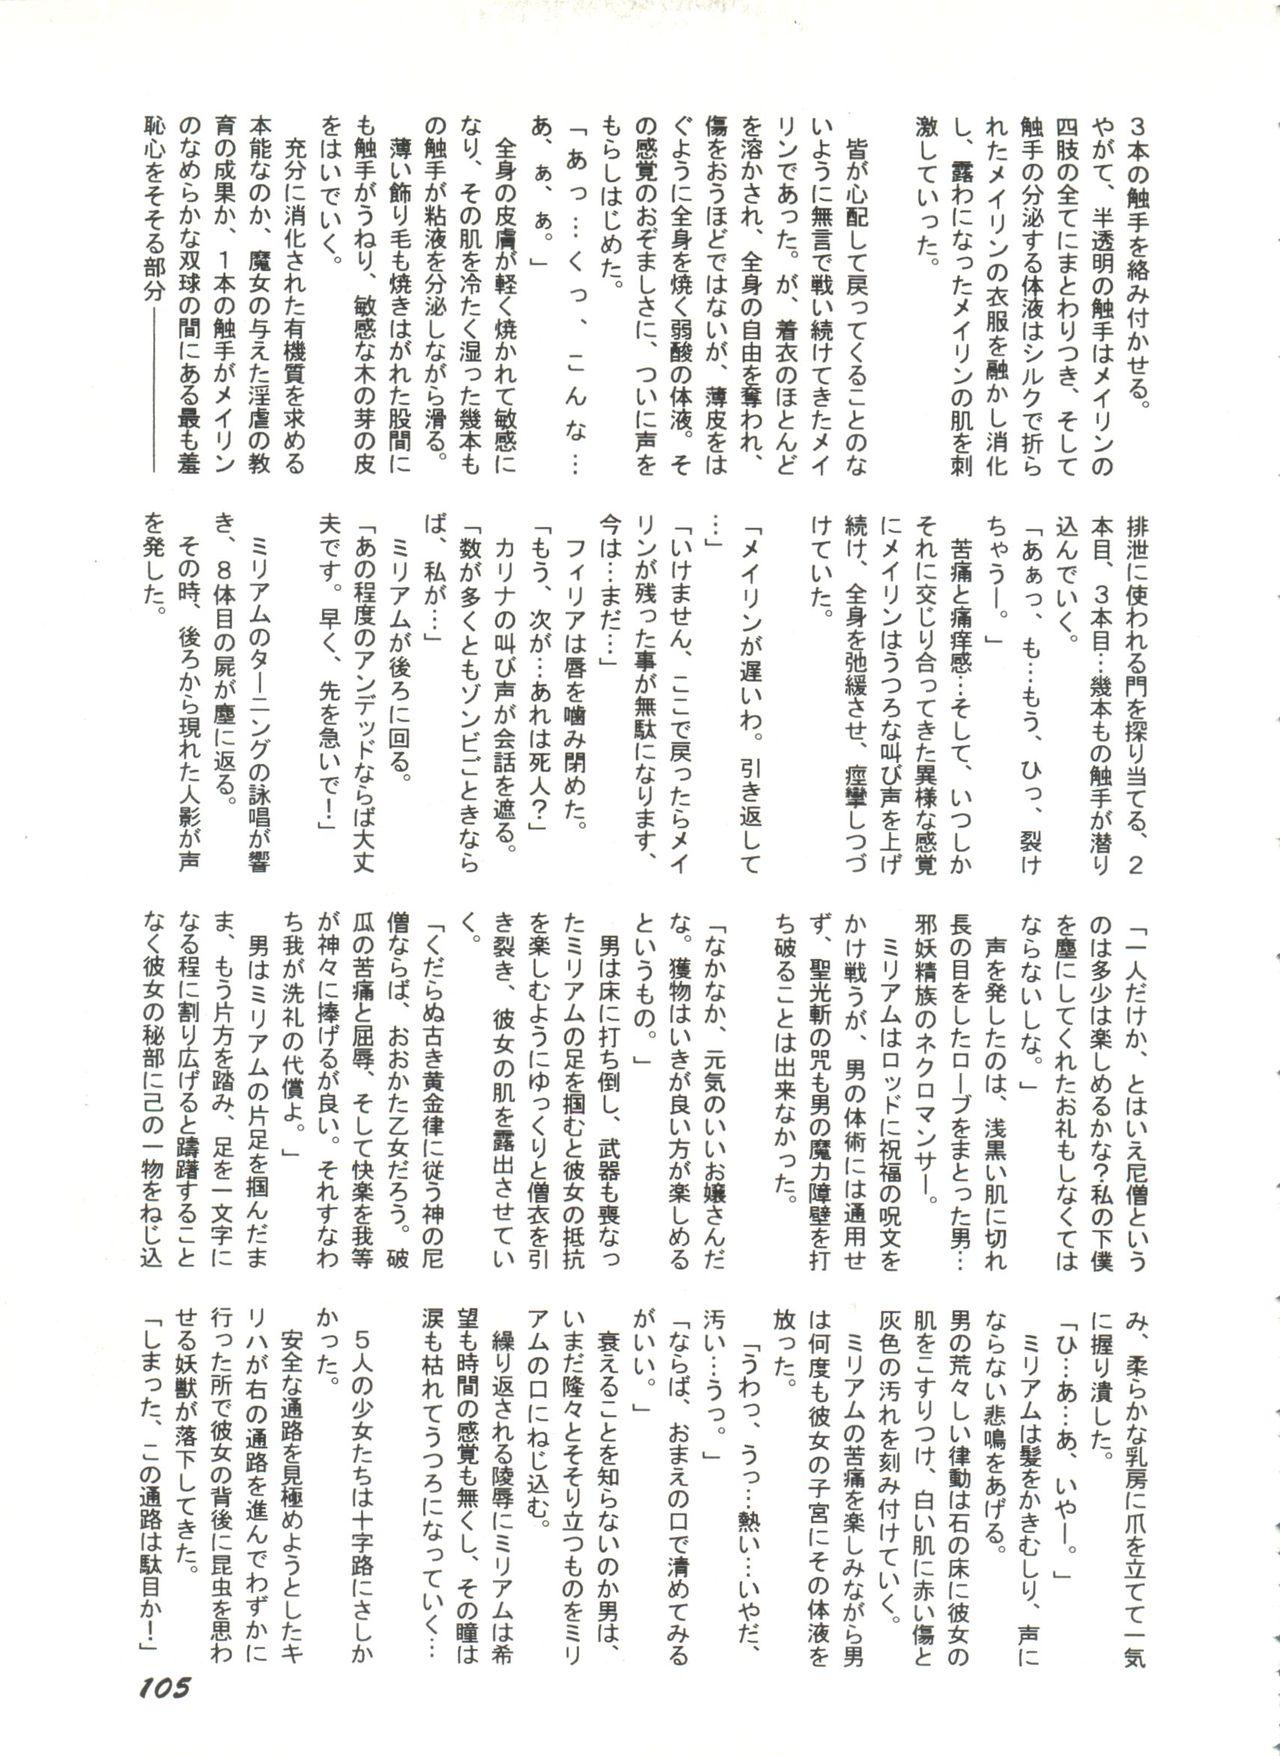 Bishoujo Doujinshi Anthology 1 106